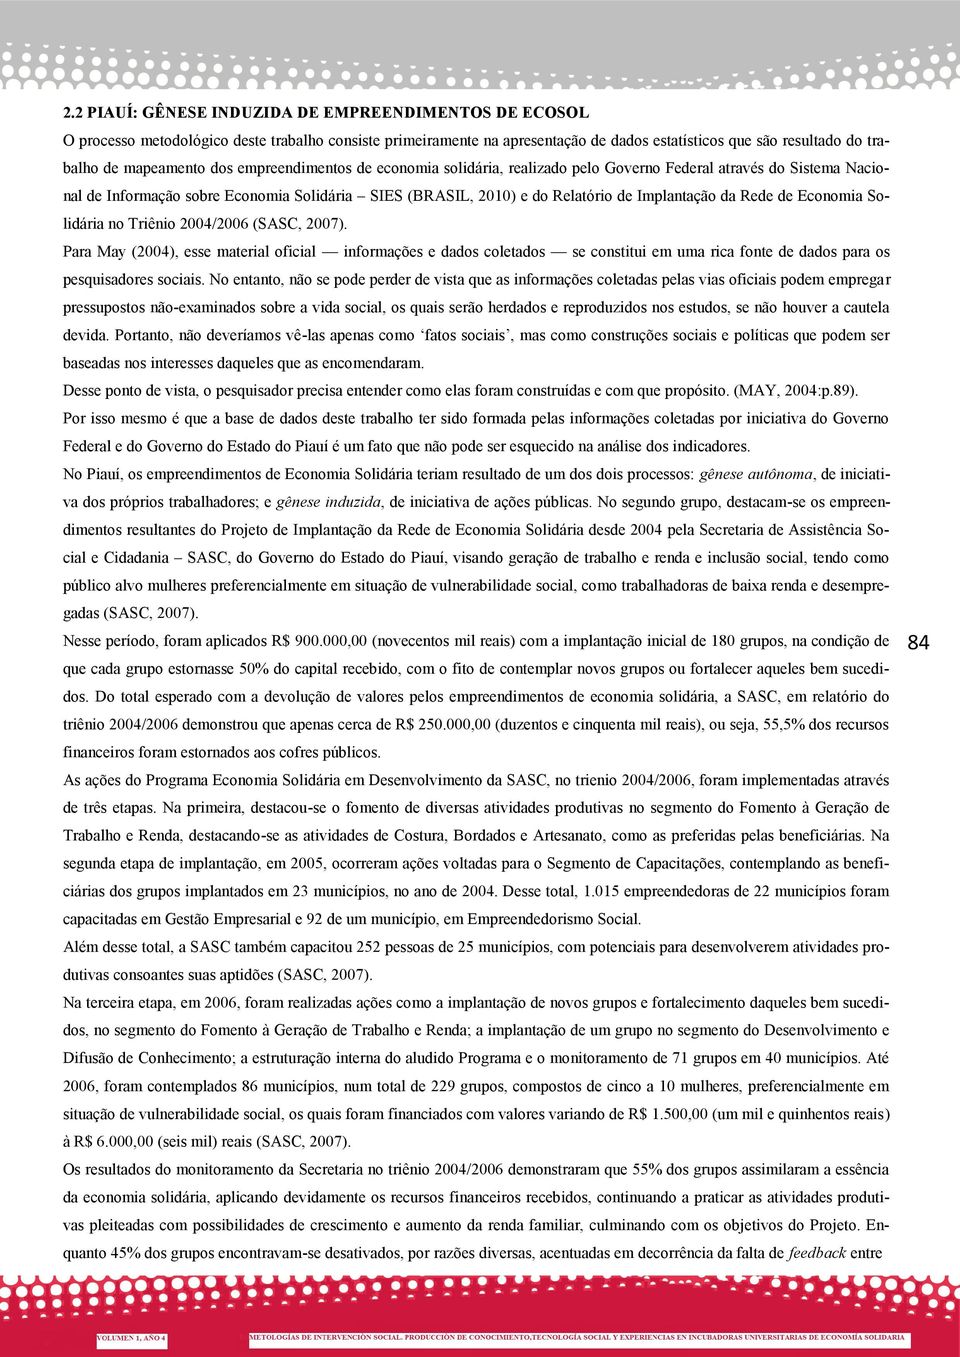 Implantação da Rede de Economia Solidária no Triênio 2004/2006 (SASC, 2007).